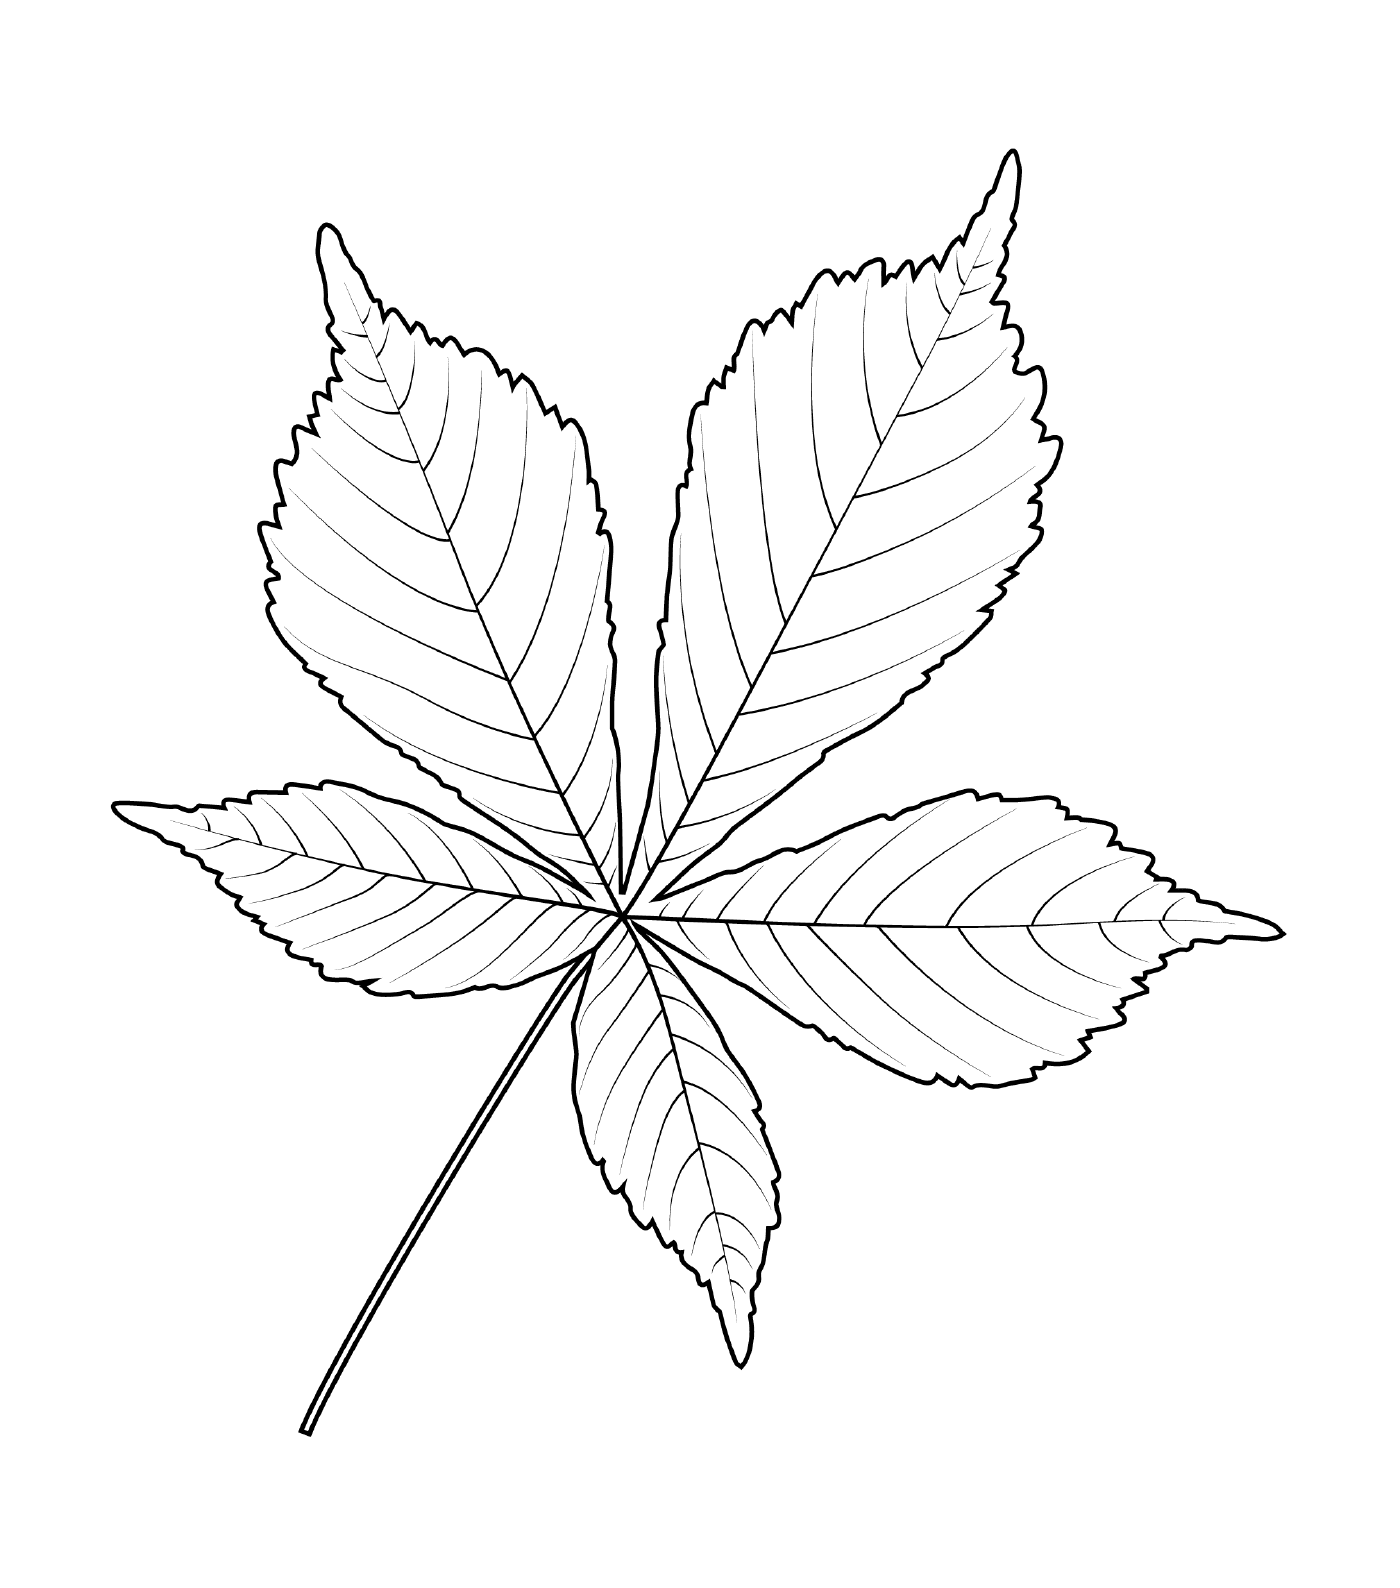  Indian chestnut leaf 